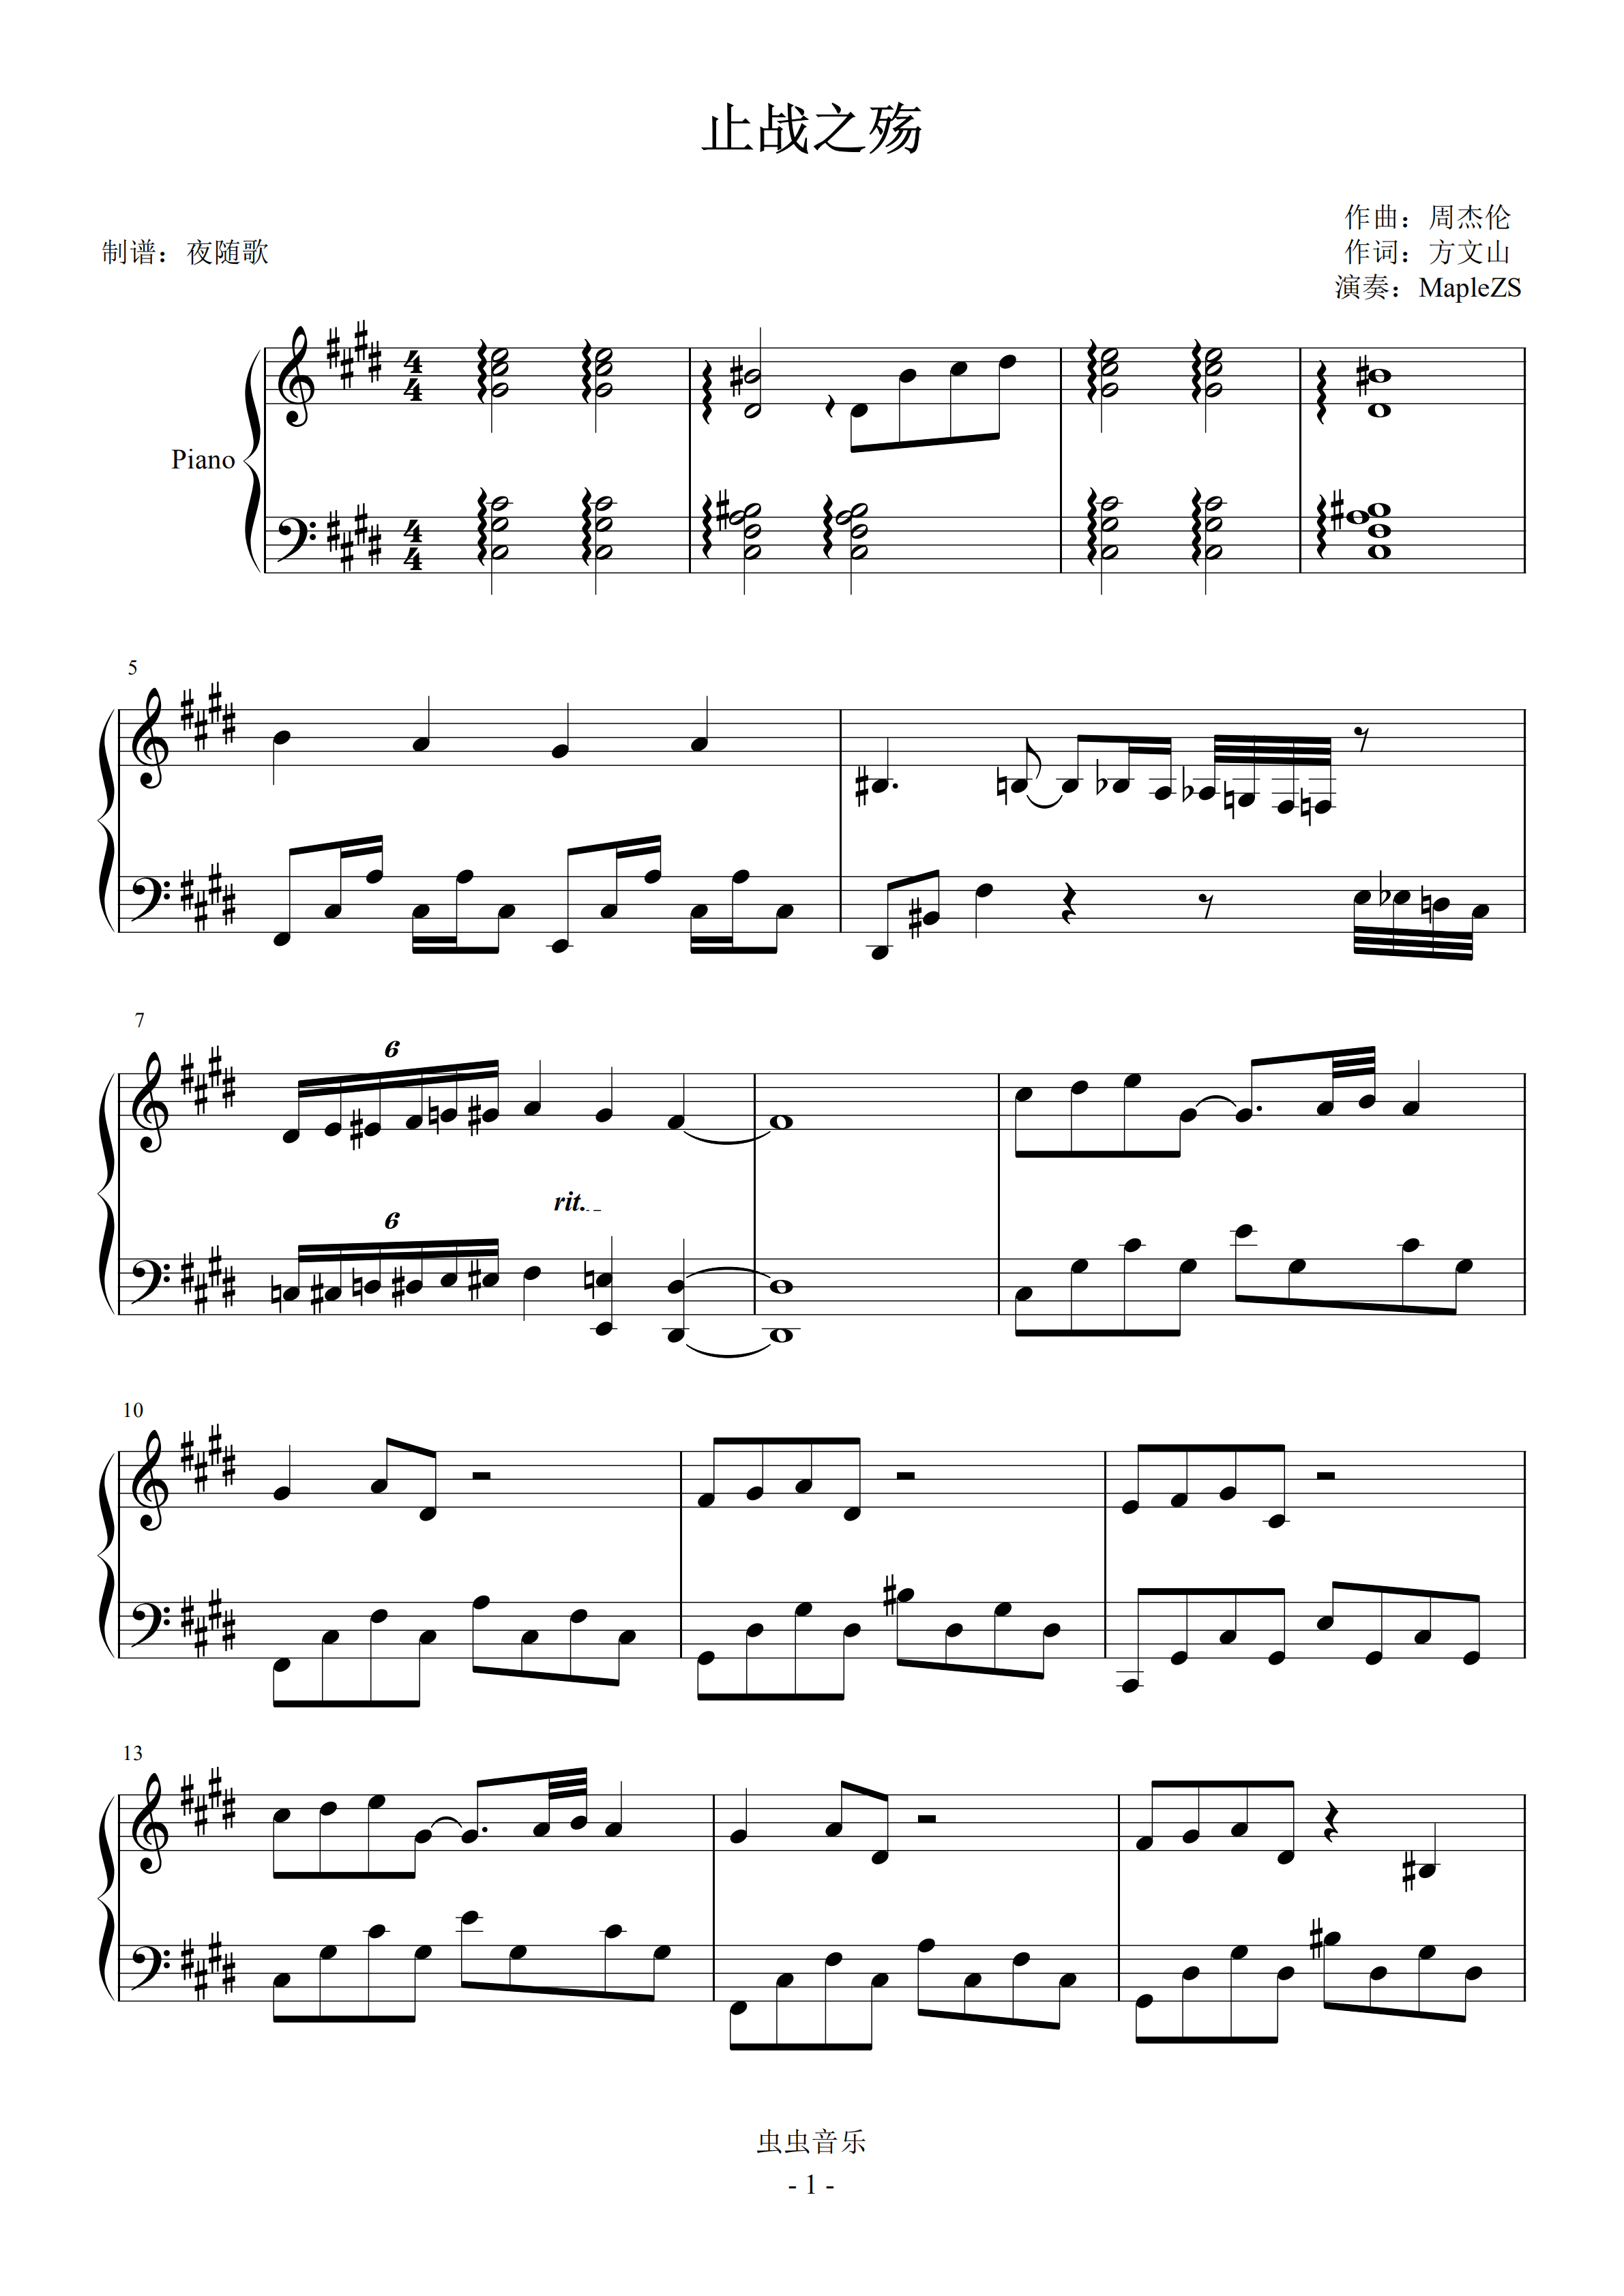 止战之殇-周杰伦-钢琴谱文件（五线谱、双手简谱、数字谱、Midi、PDF）免费下载